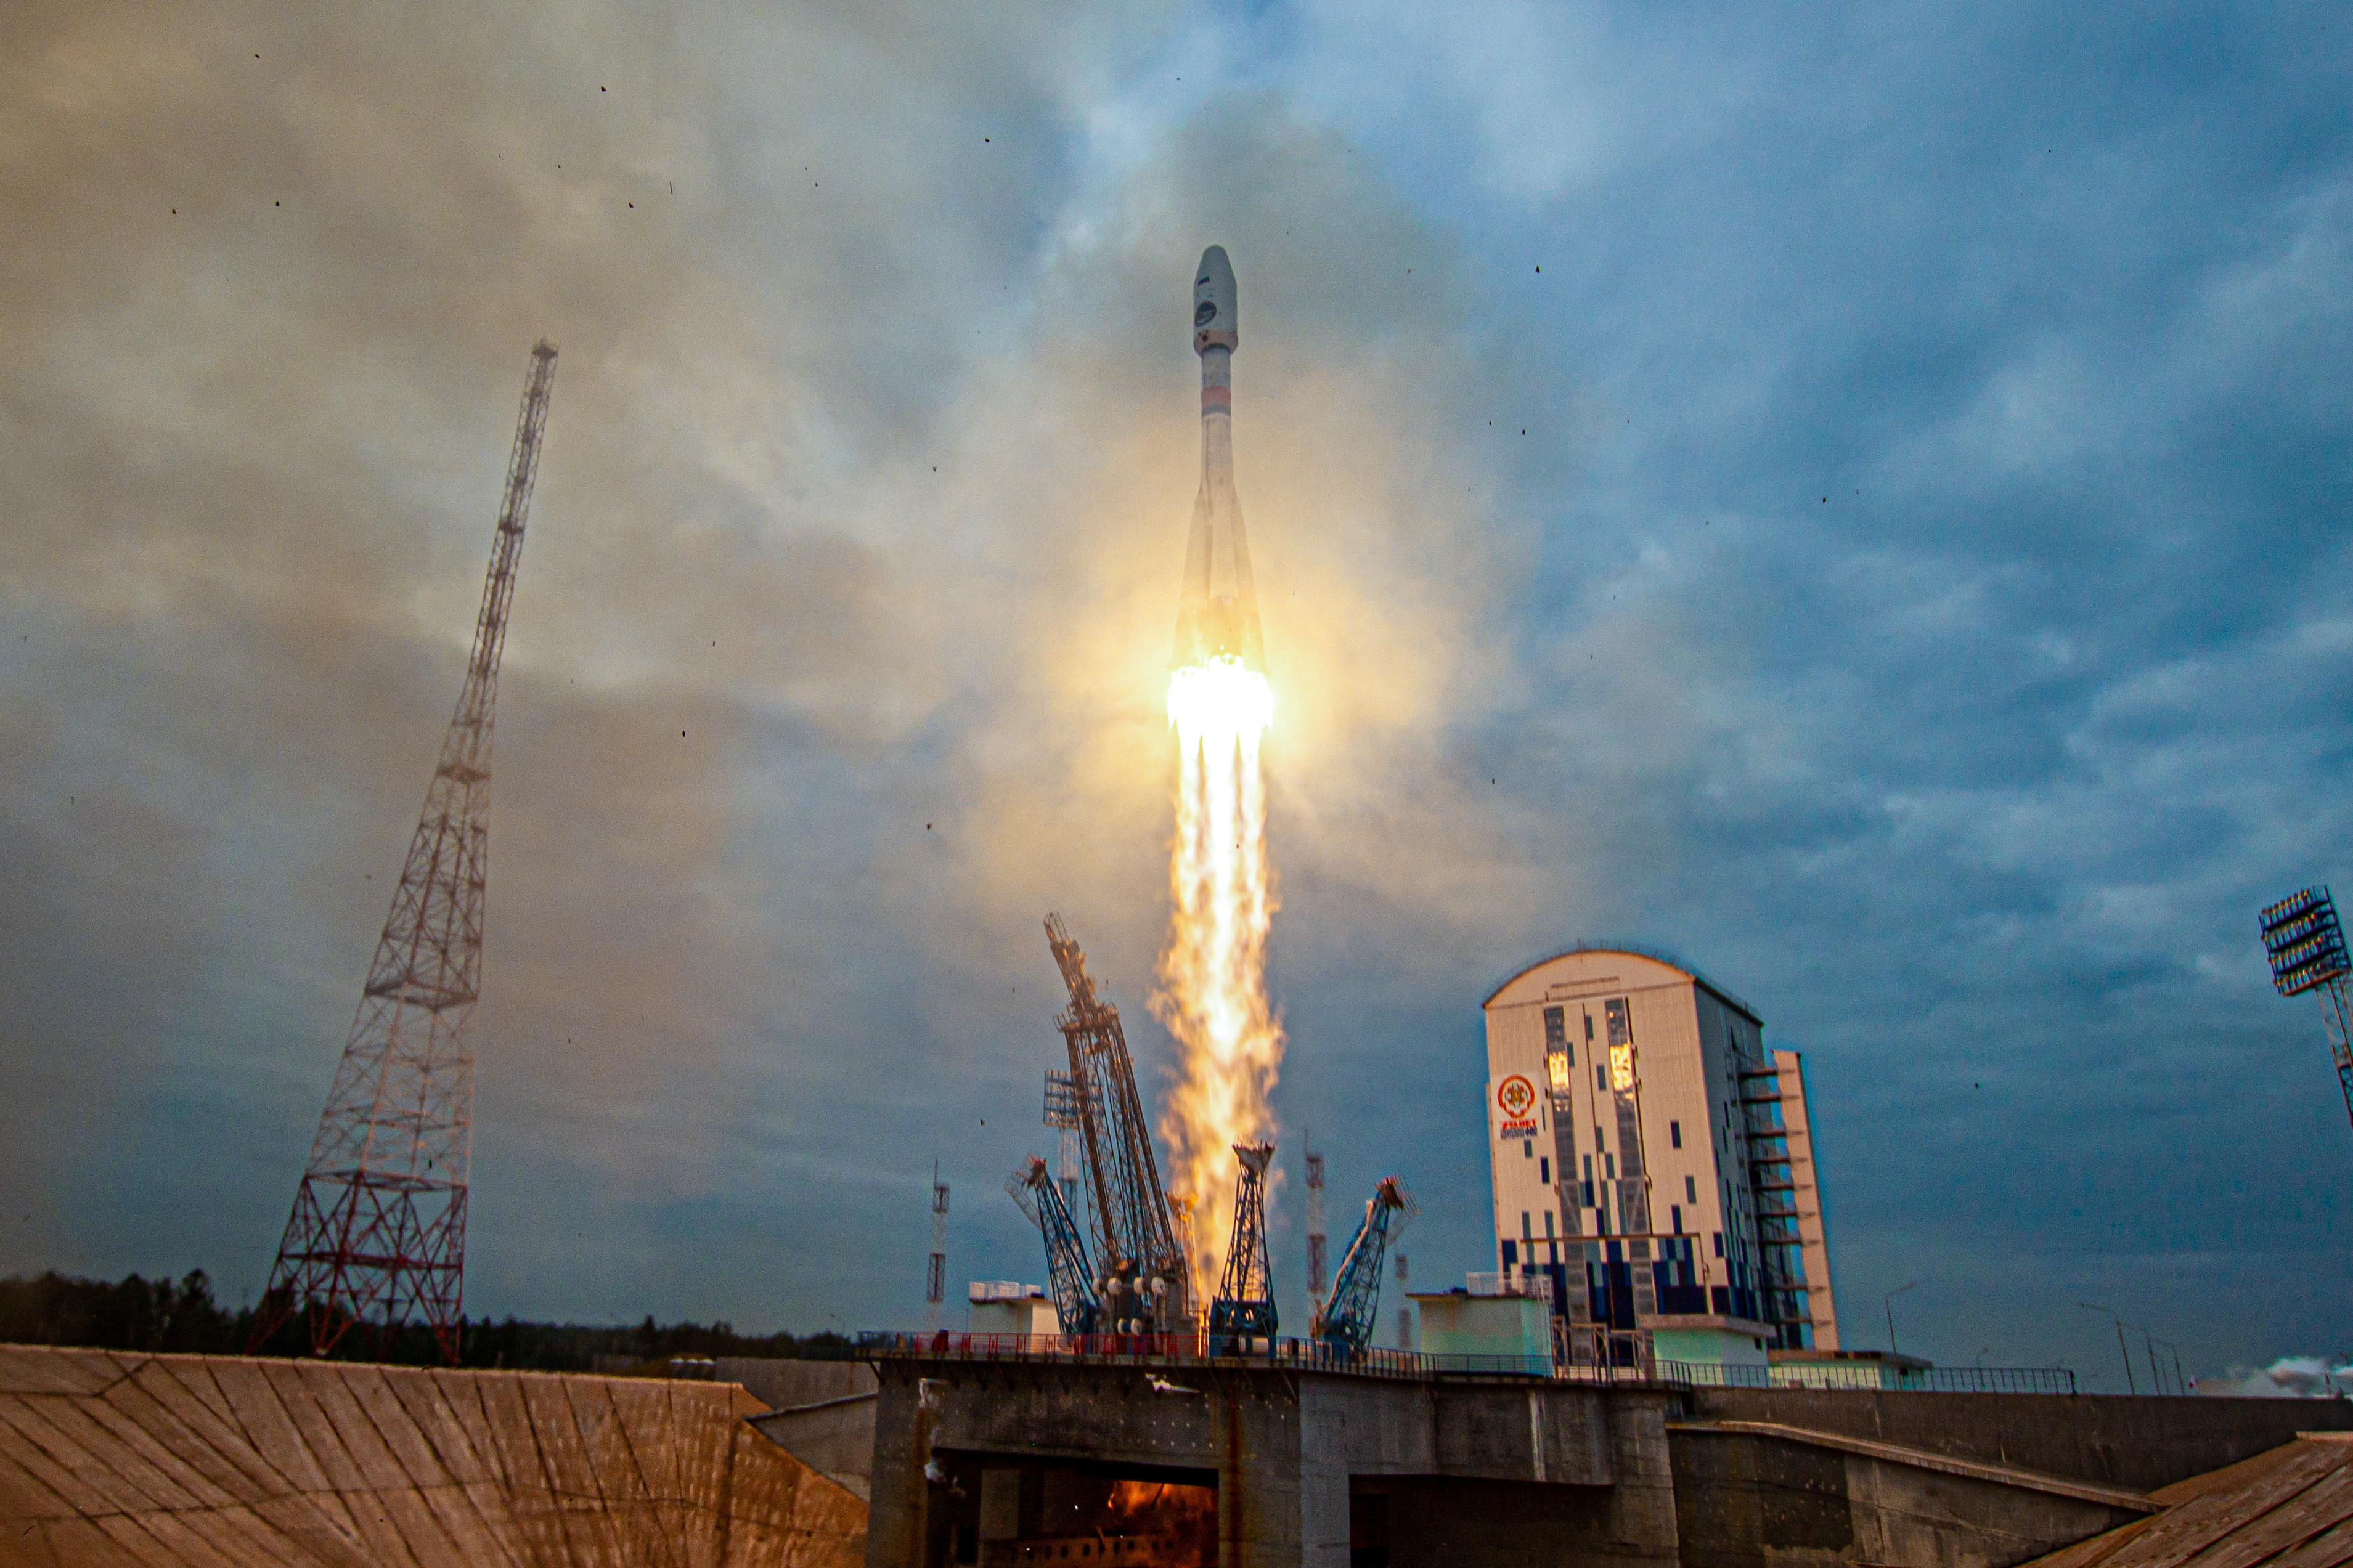 Το ρωσικό σεληνιακό ρόβερ ξεκινά την επεξεργασία των πρώτων δεδομένων – Διαστημική Υπηρεσία